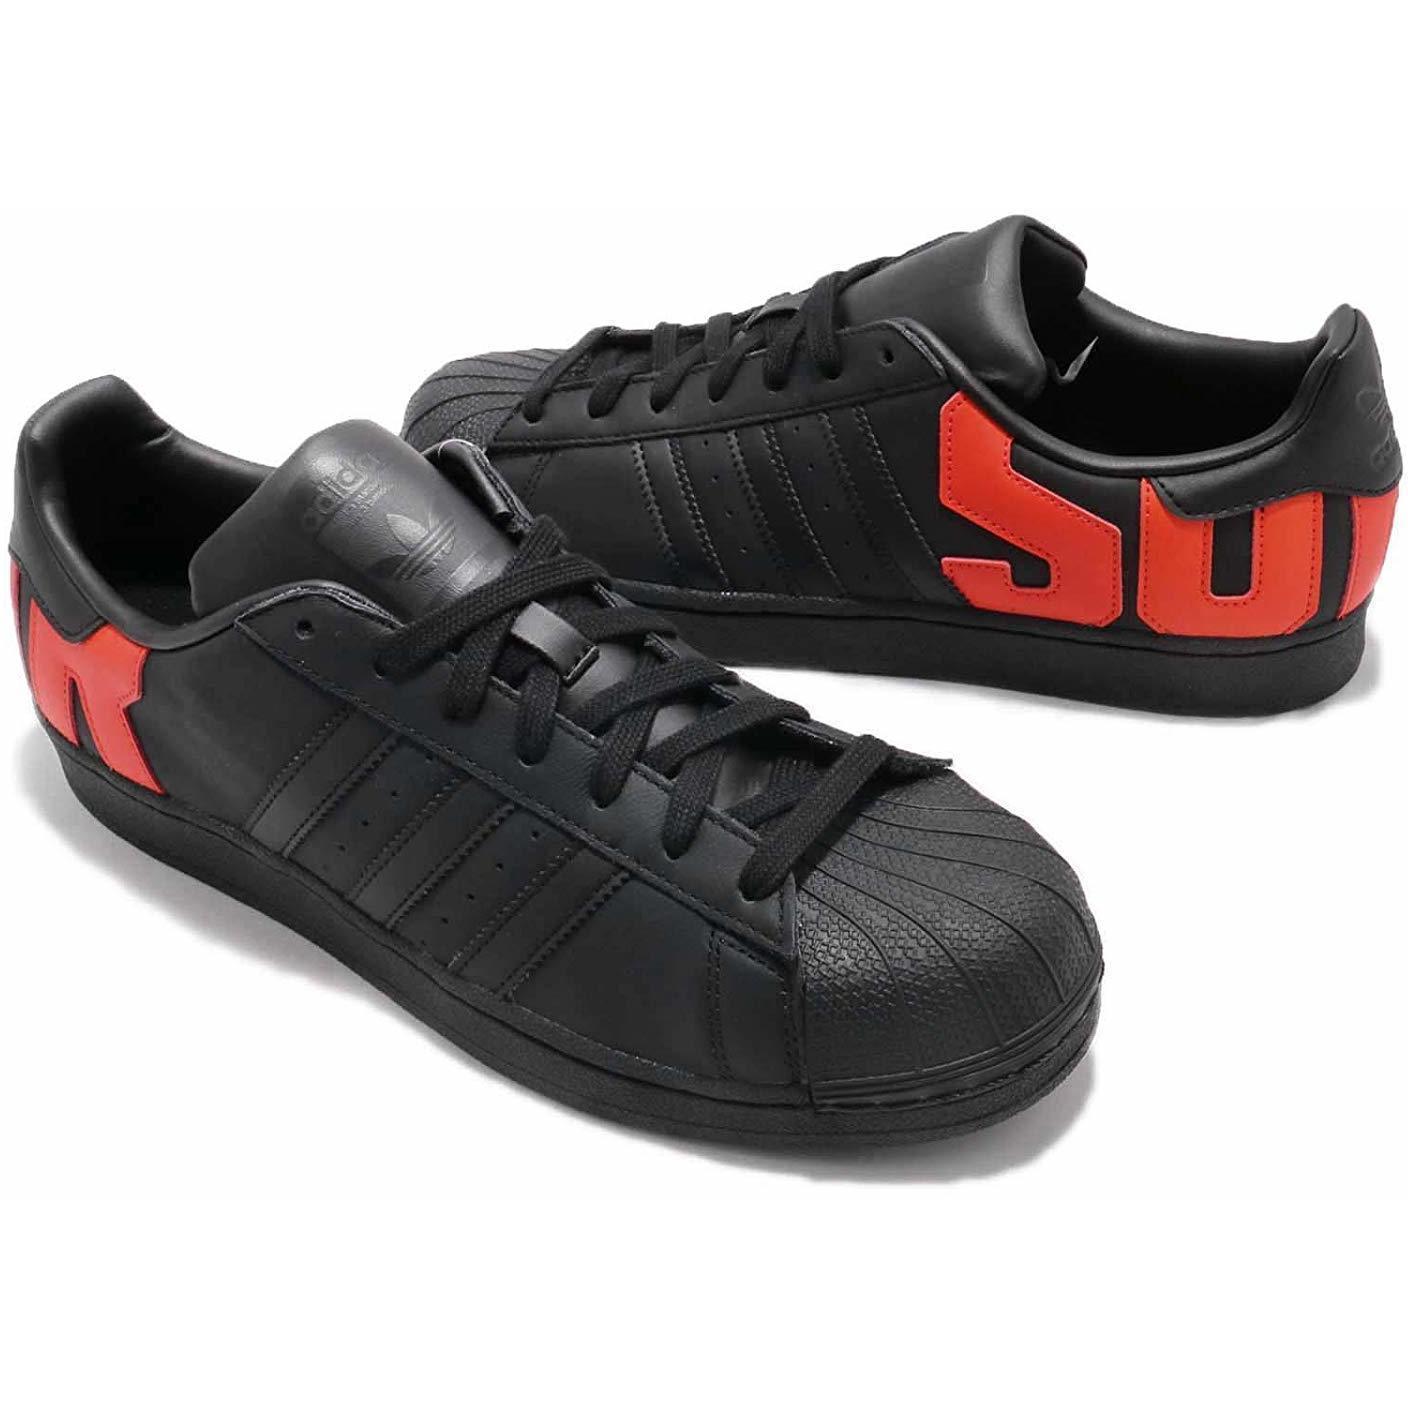 marker Roar Humane Pantofi sport, Adidasi barbati adidas Originals Superstar B37981